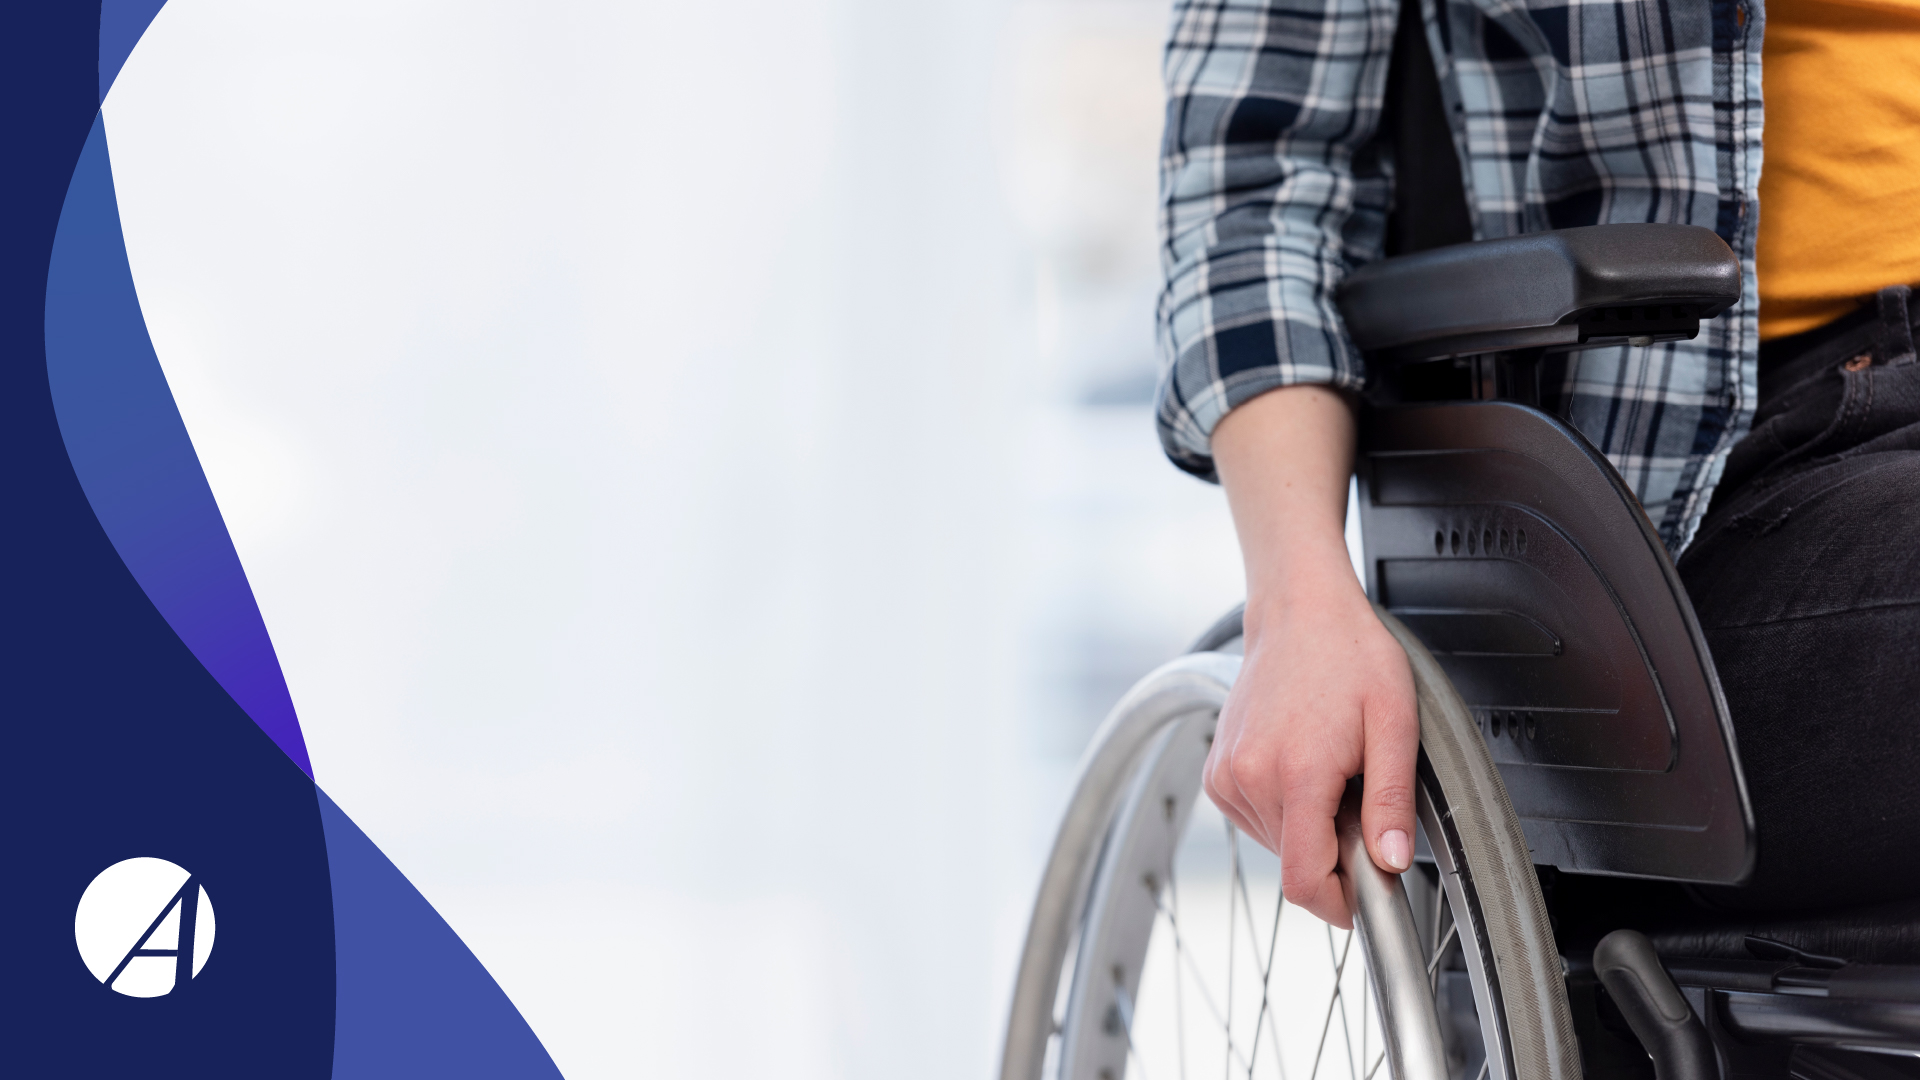 Pessoa com deficiência: Quando vou aposentar?